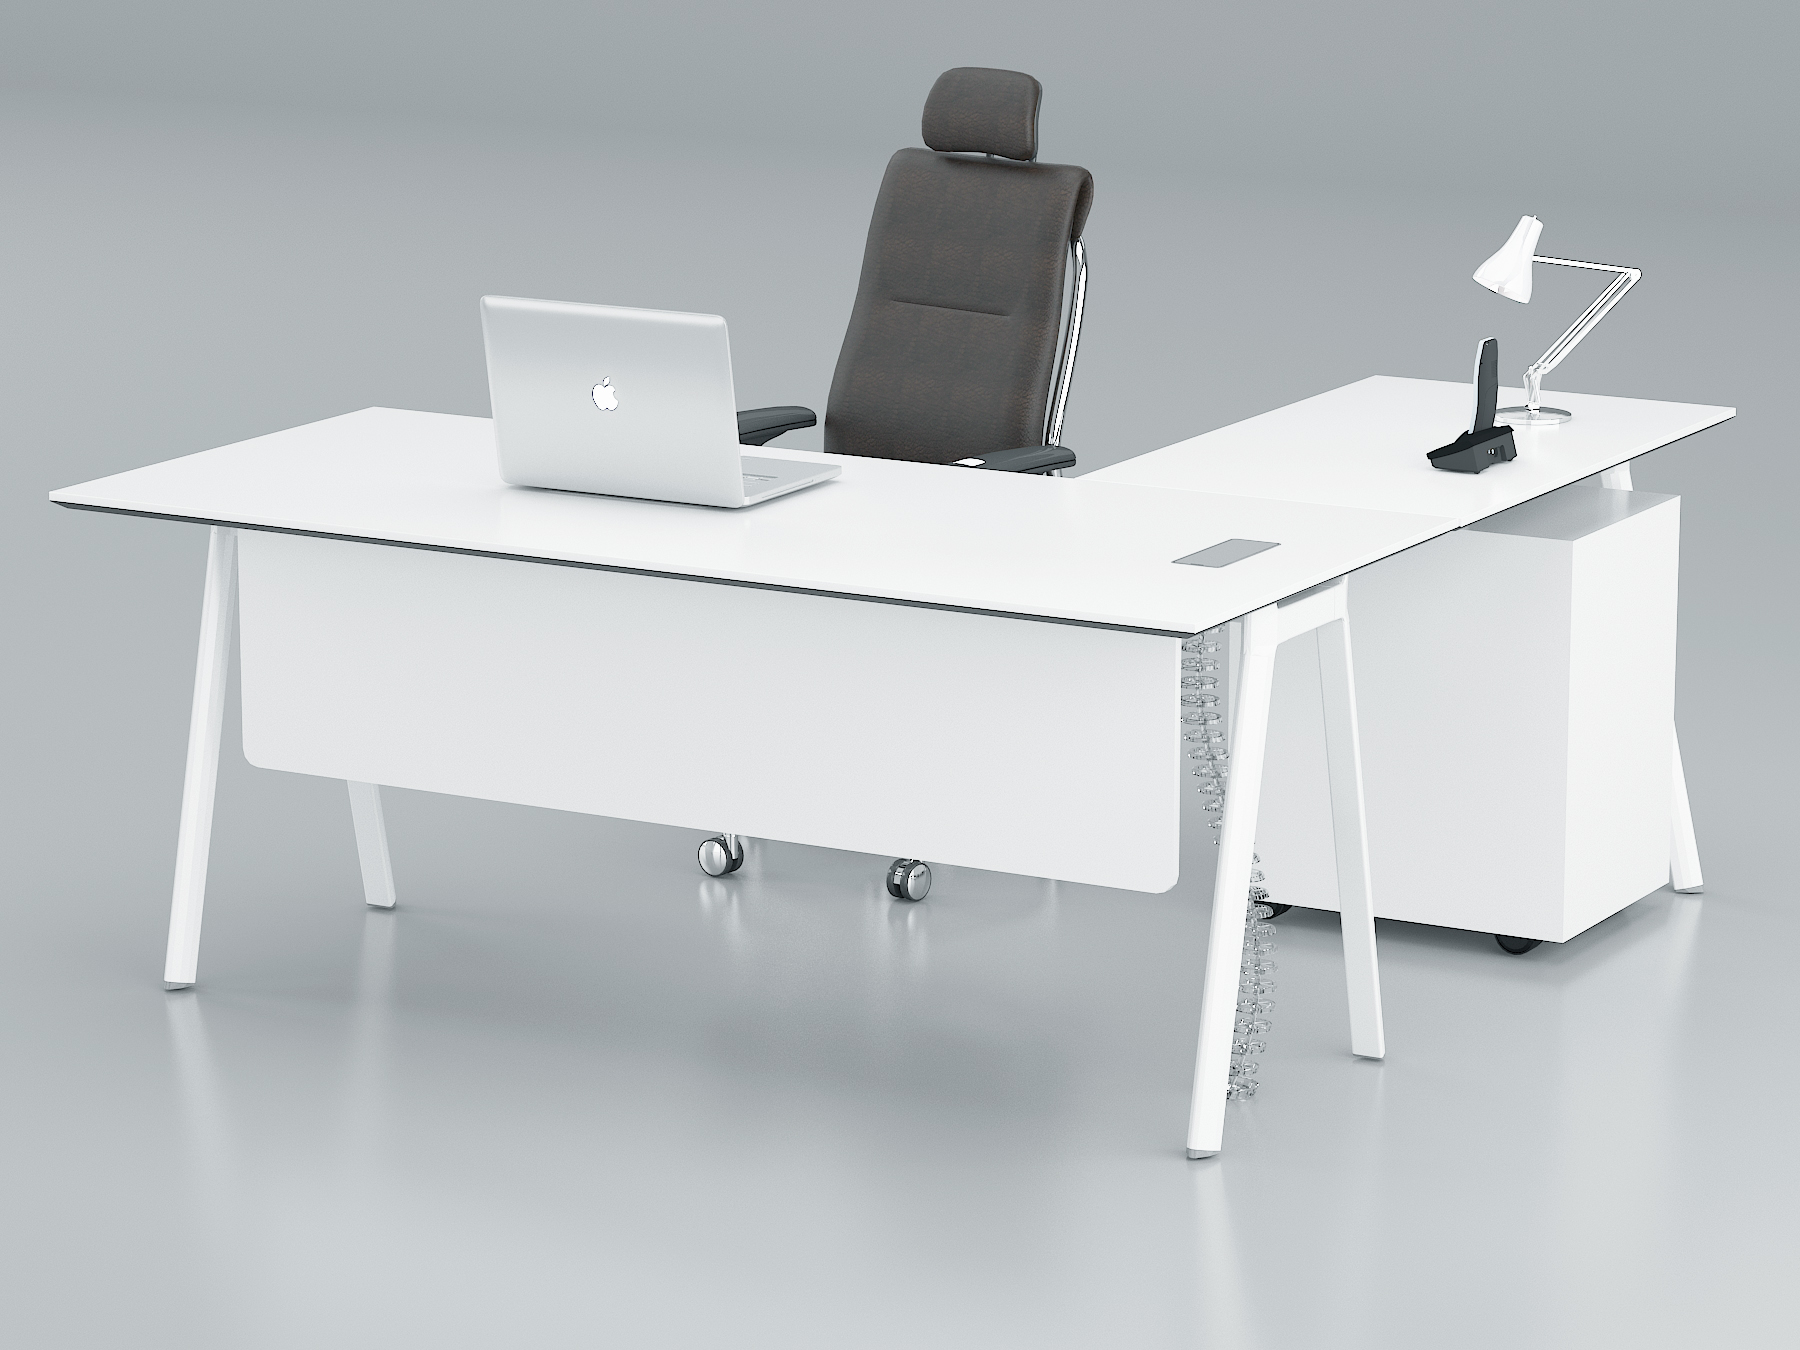 Fad L Shape Executive Table. 3 Drawer Mobile Pedestal, With Metal Leg (L200 x W90 xH75)